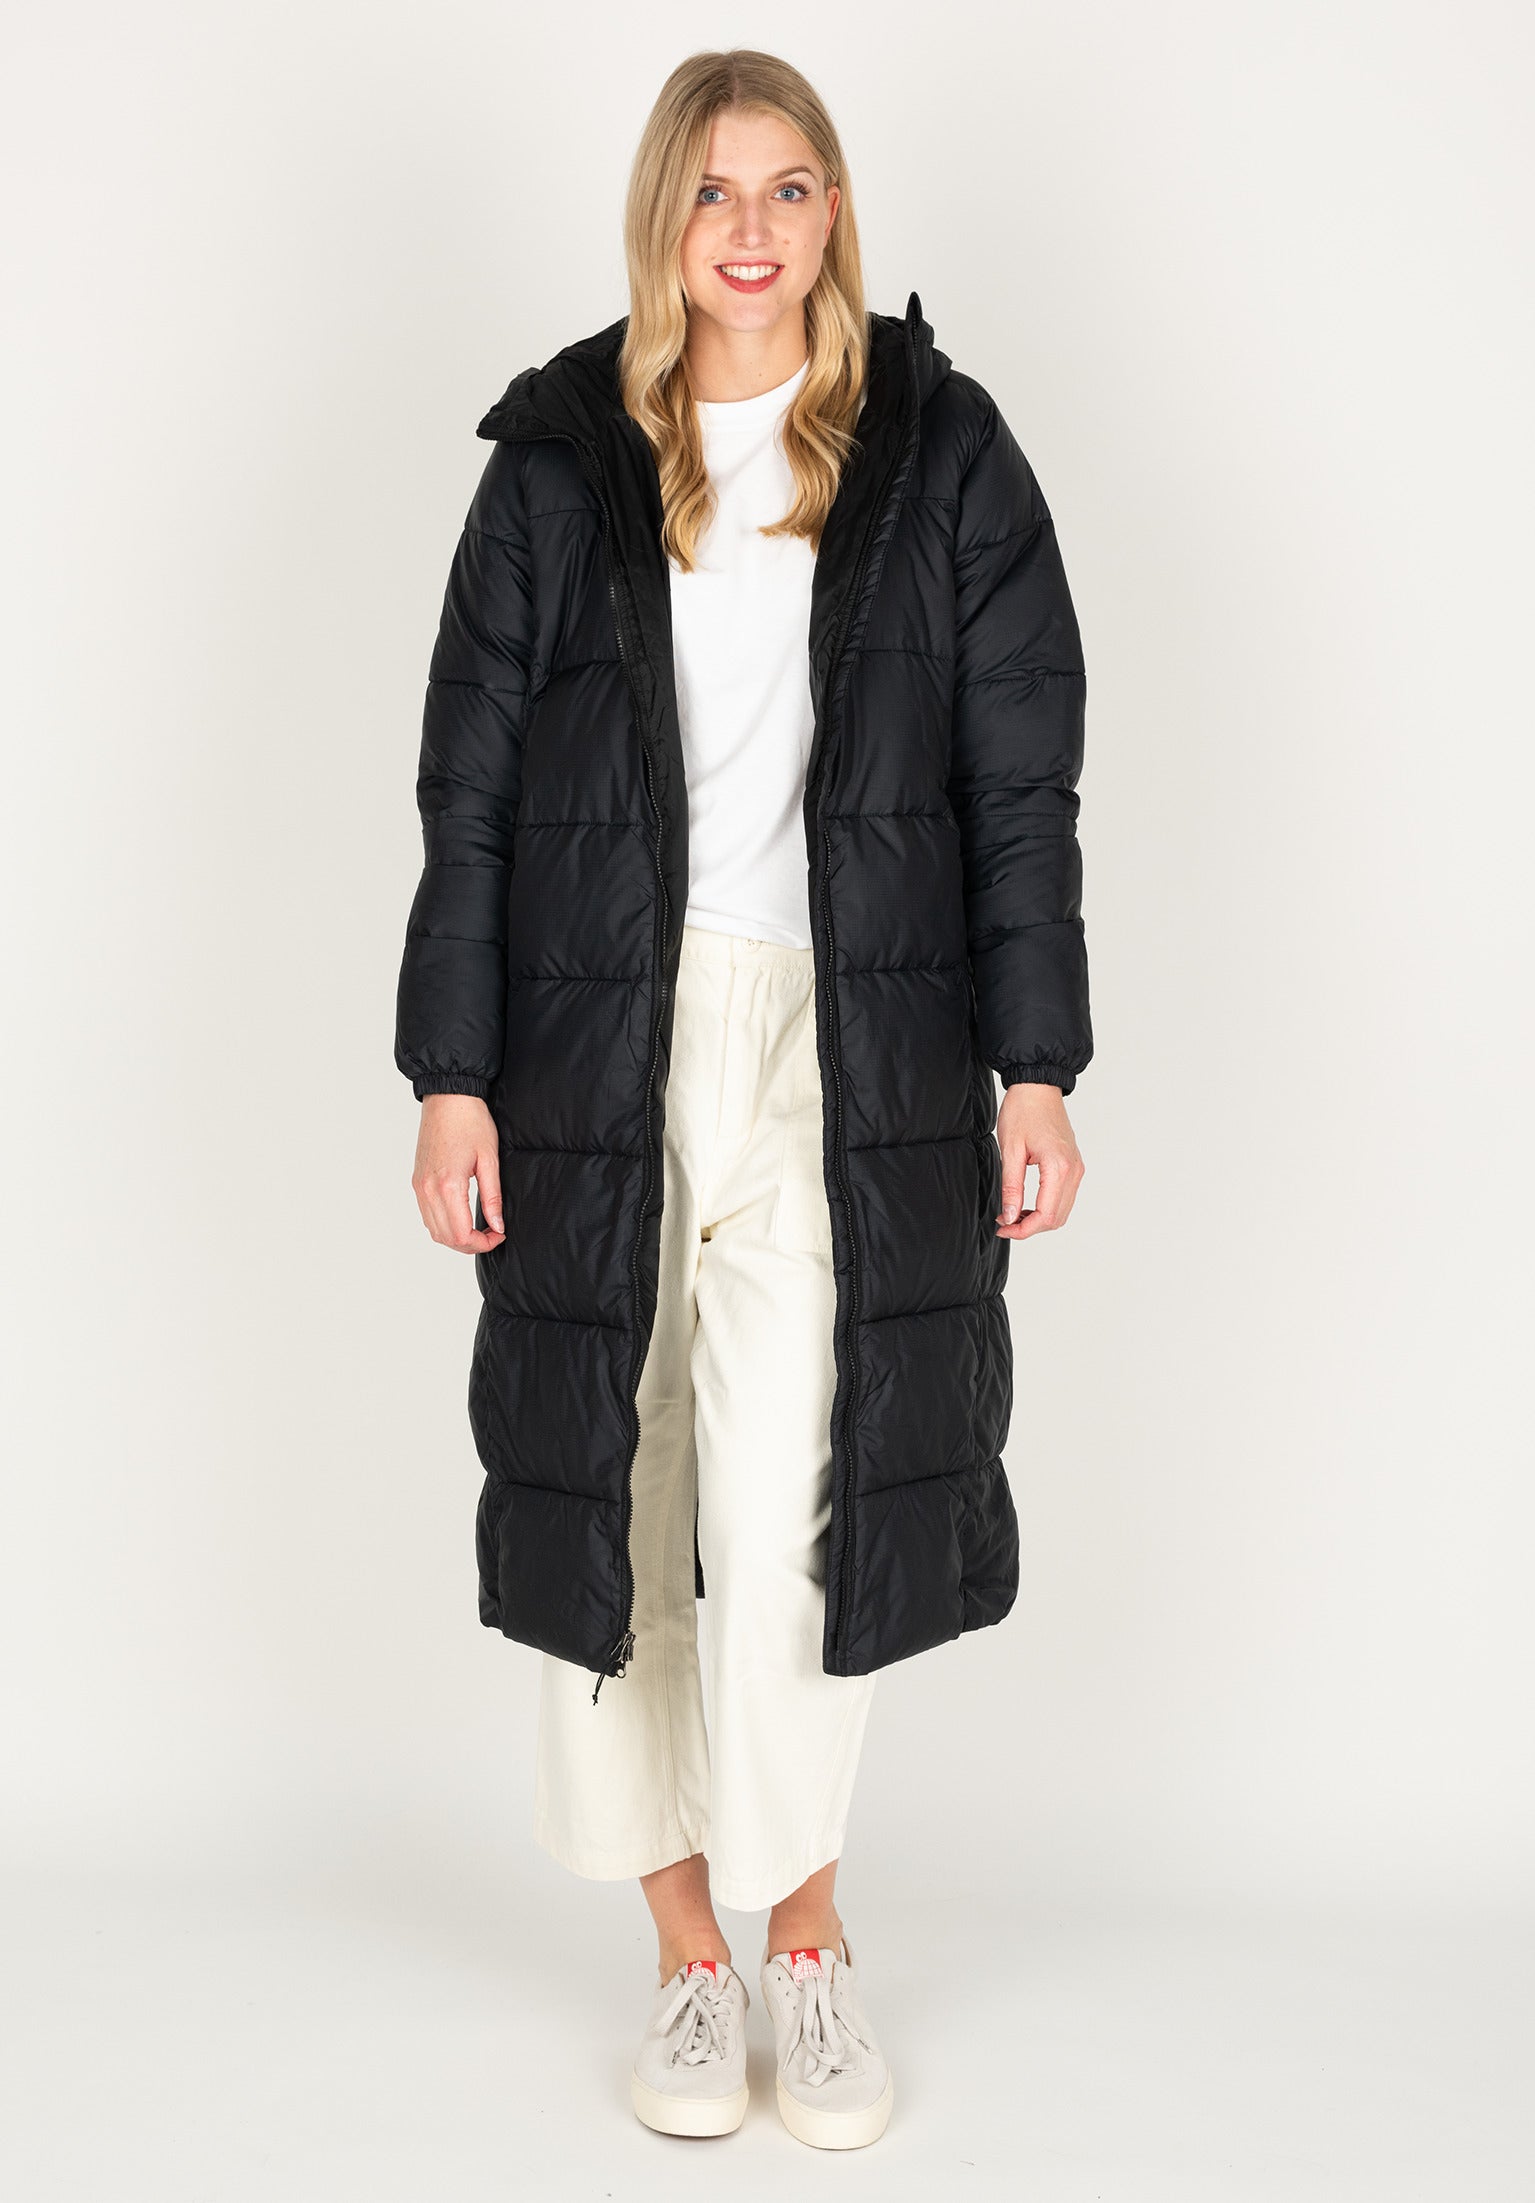 Women's Coats - Buy Coats For Women Online | Superbalist